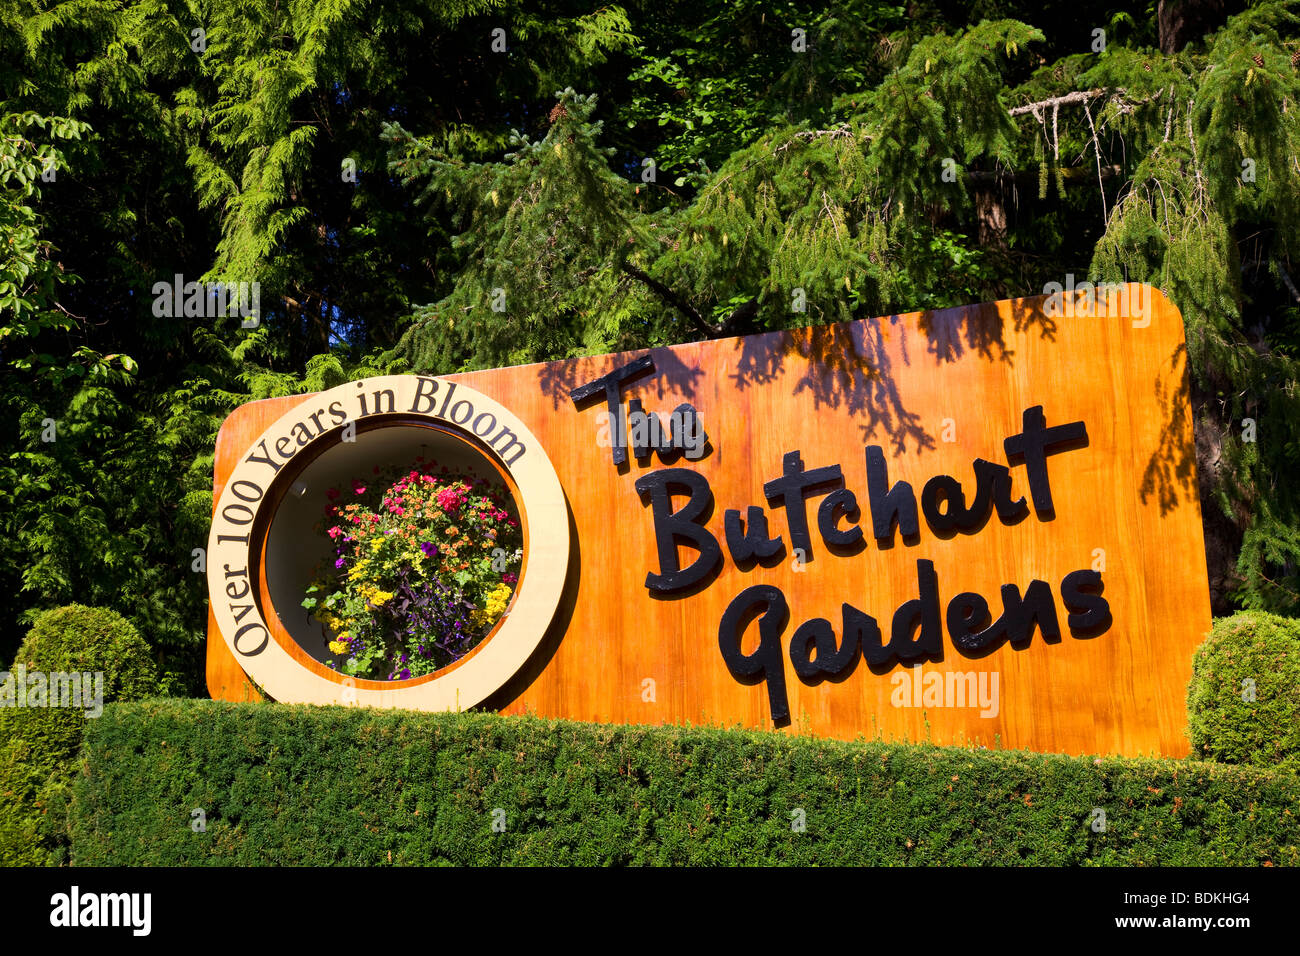 Melden Sie sich für die Butchart Gardens, Victoria, Vancouver Island, British Columbia, Kanada. Stockfoto